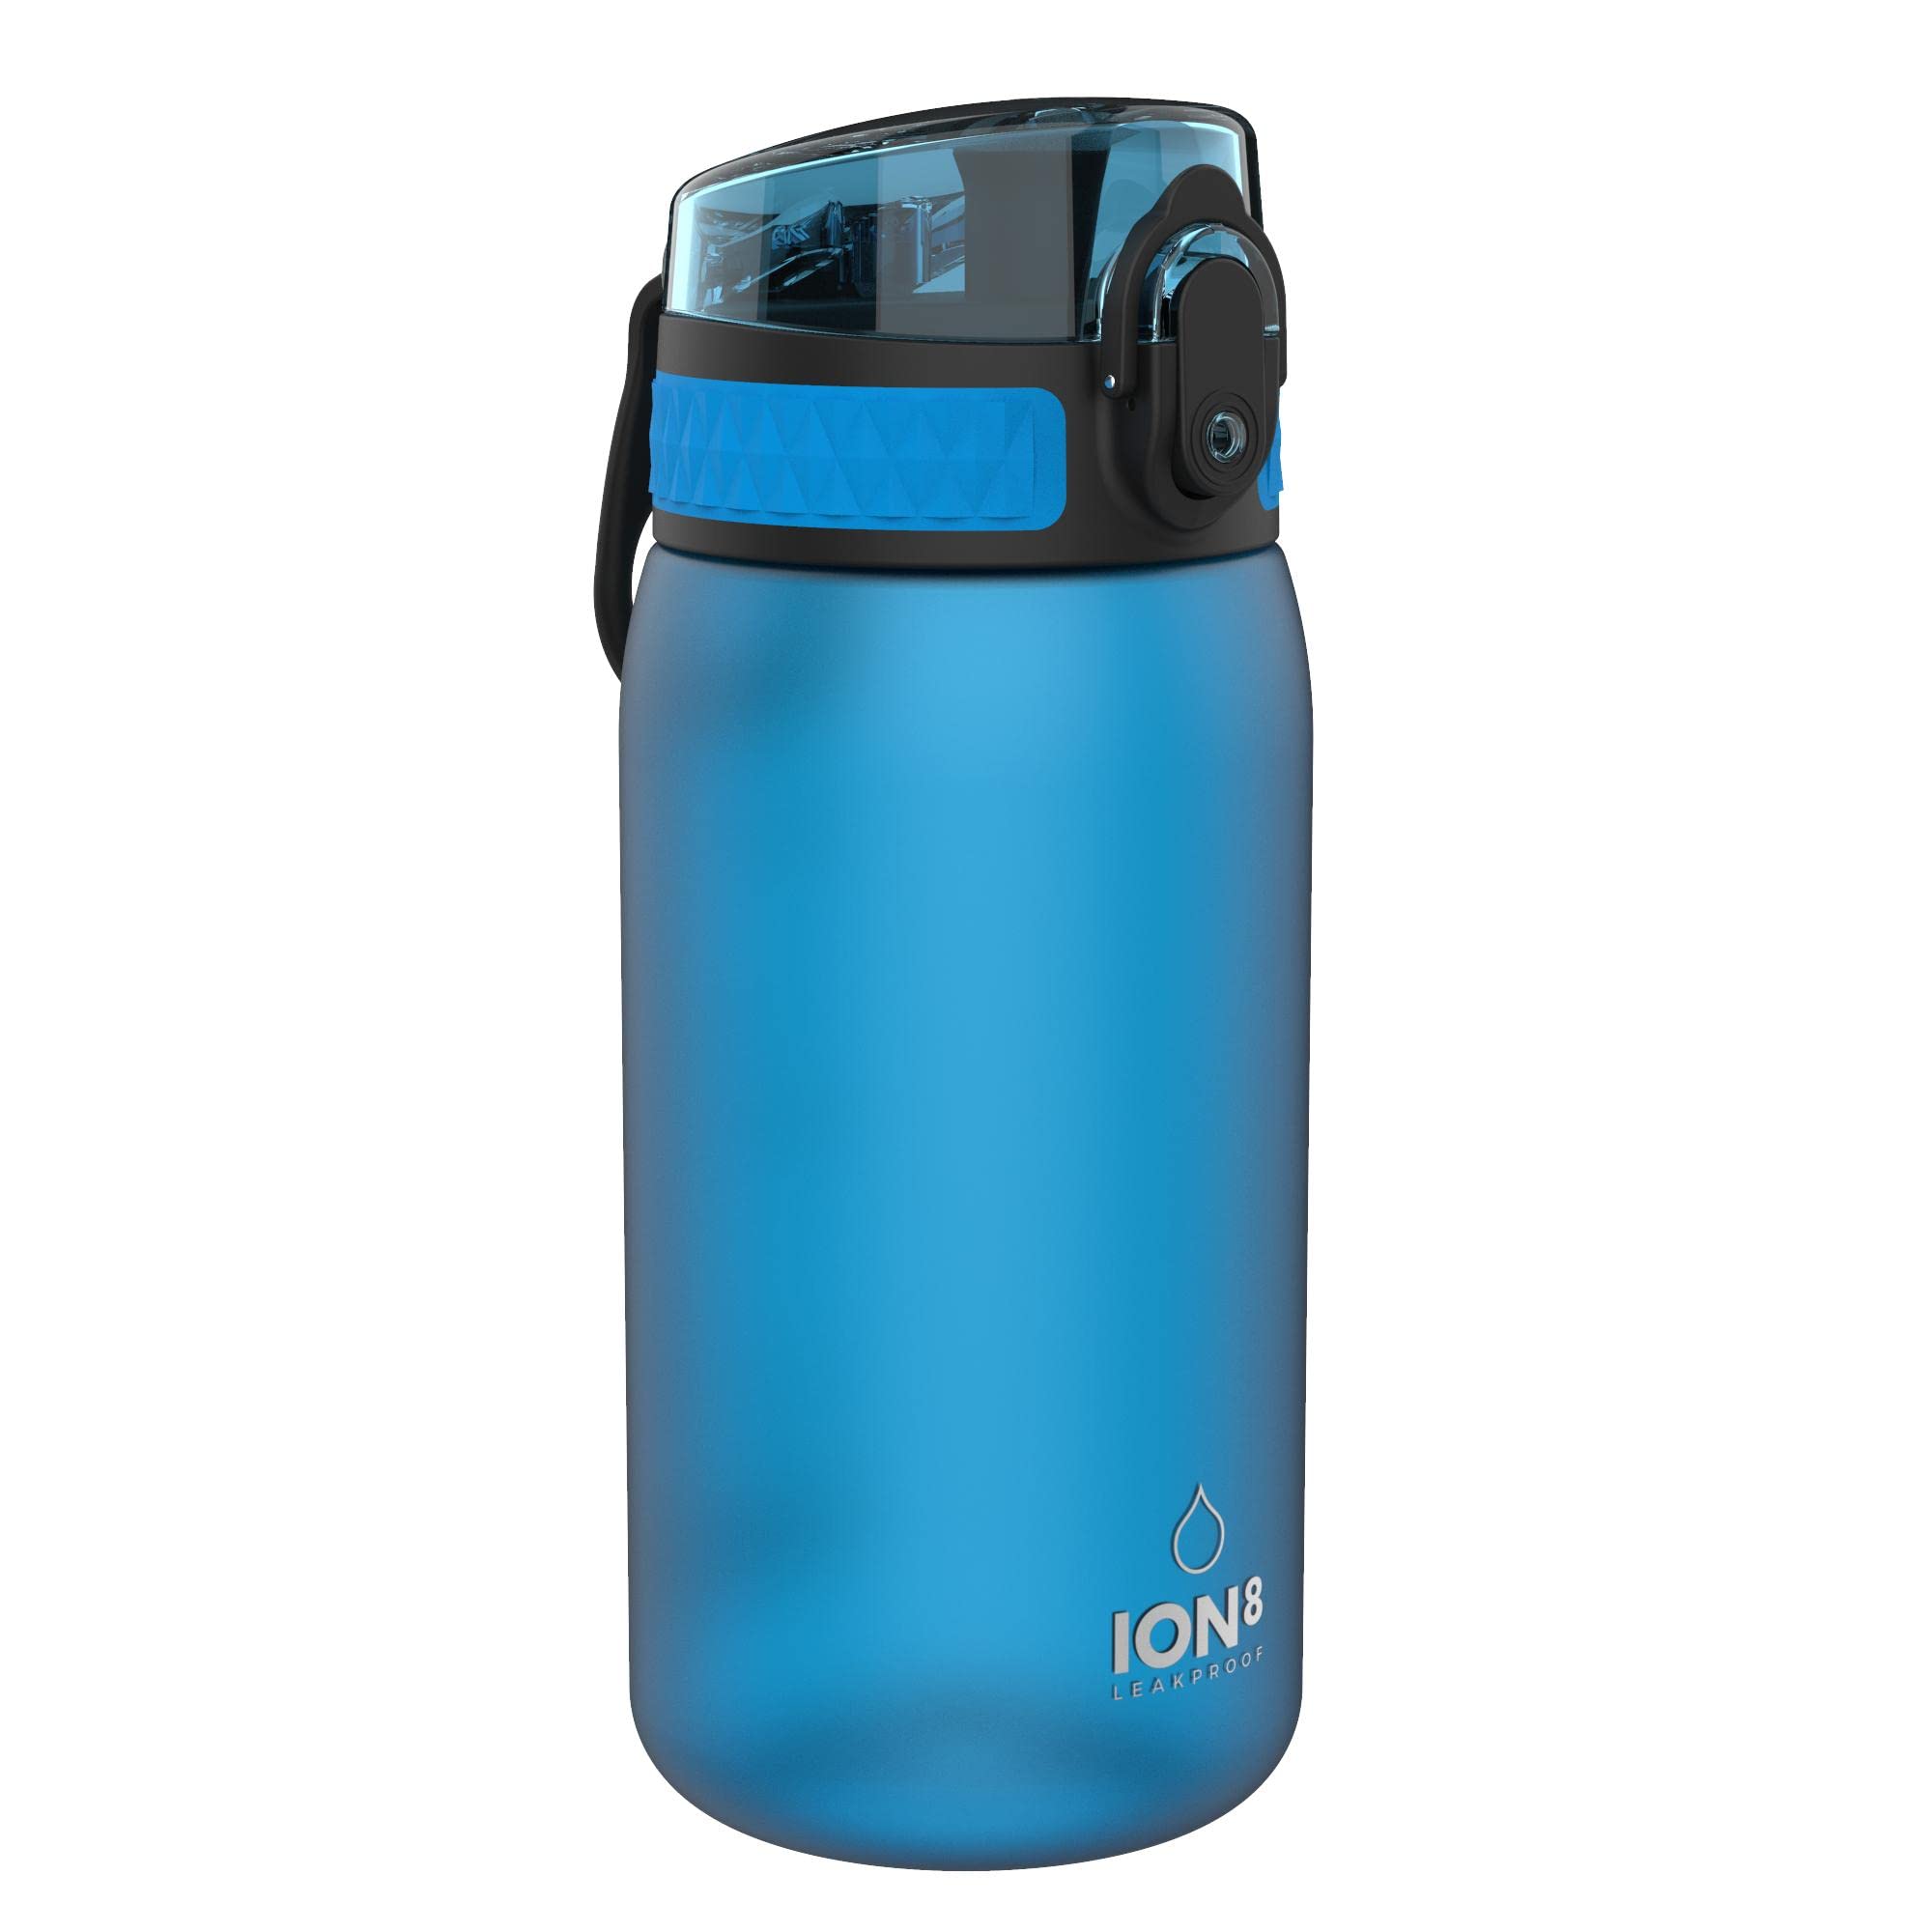 Ion8 Leak Proof Kids' Water Bottle, Stainless Steel, Lockable Lid